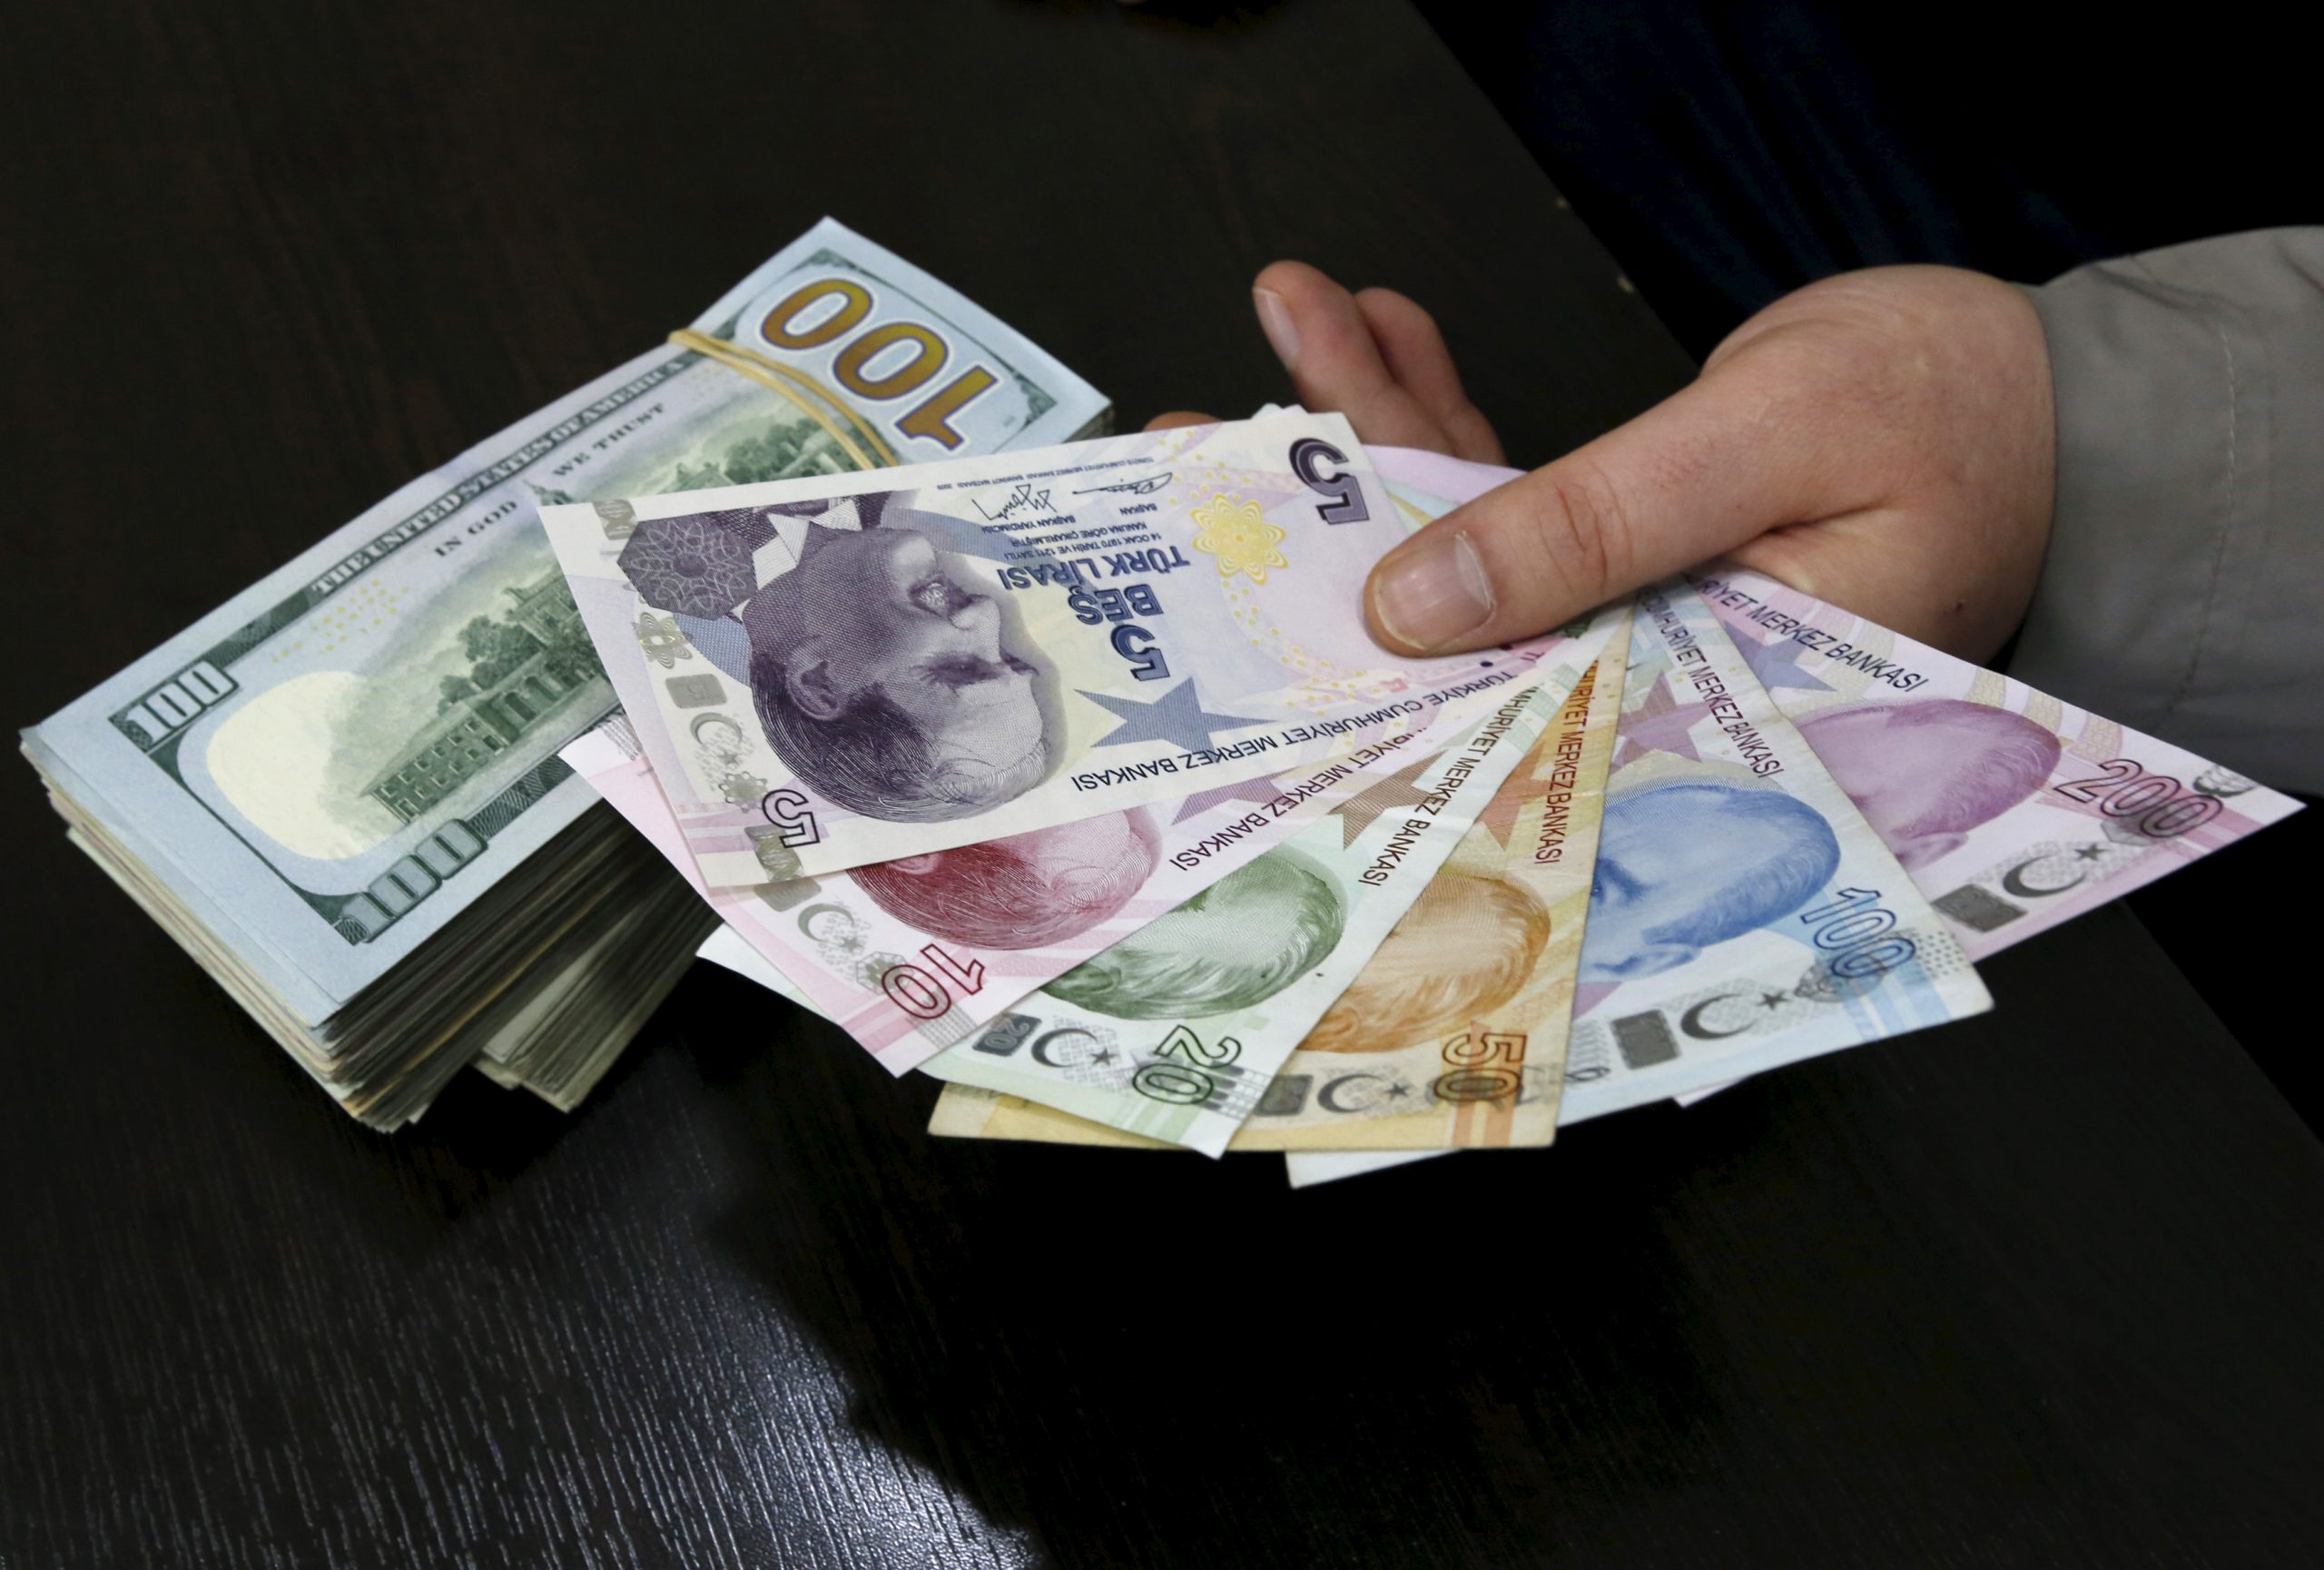 العملة تنخفض والتضخم يرتفع، لكنّ خطة أردوغان ستؤتي ثمارها! ماذا يحدث في الاقتصاد التركي؟